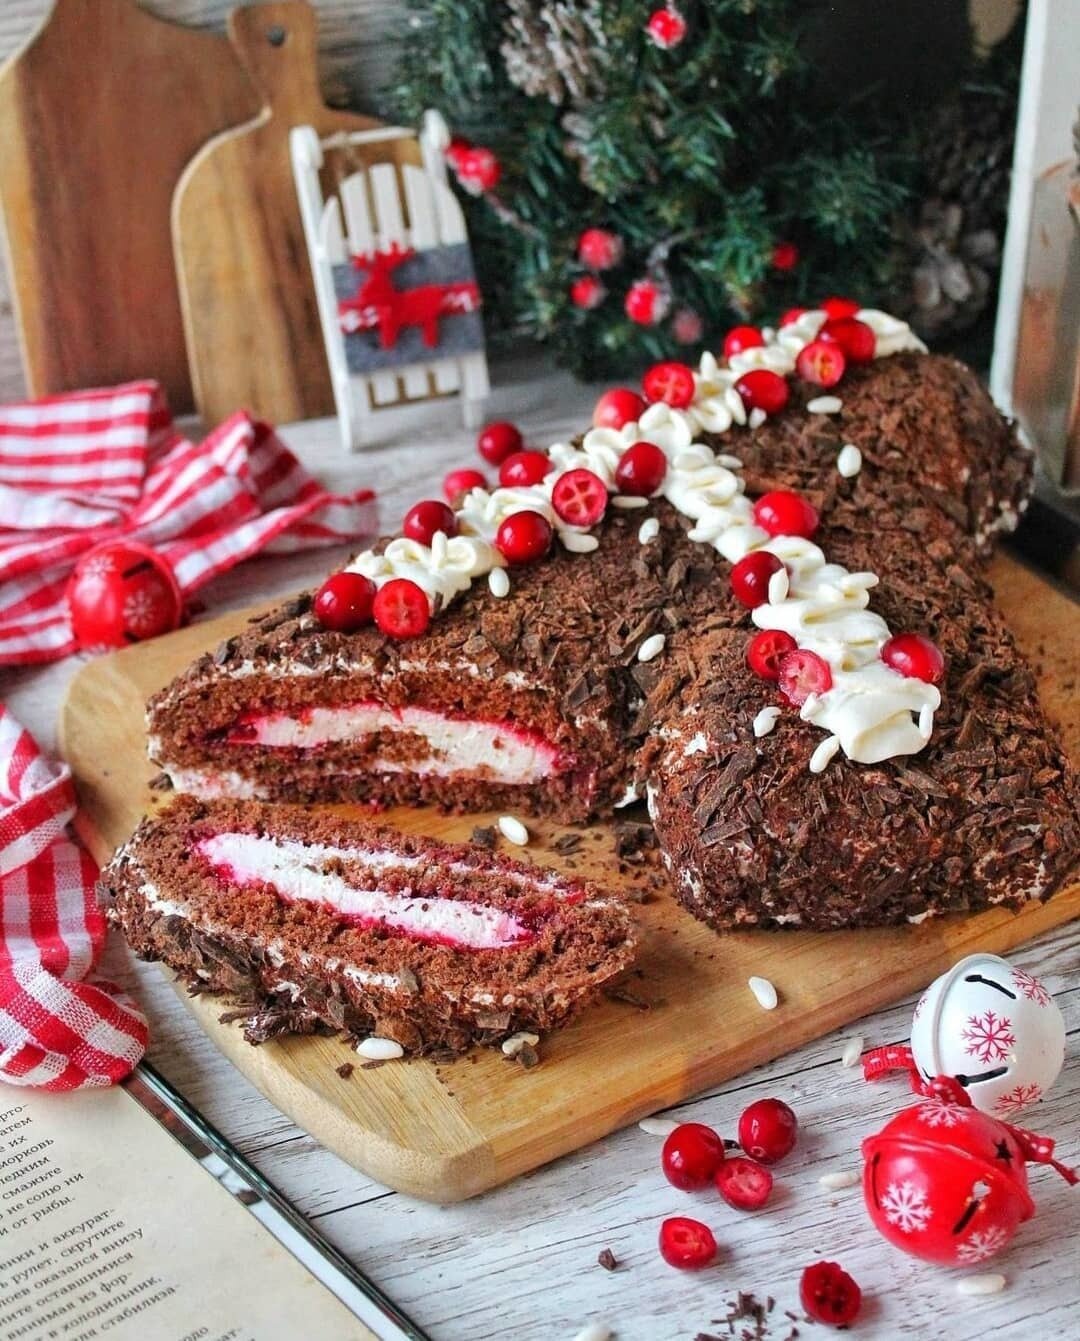 6 идей для рождественского стола: какие блюда калининградцы могут подать в канун праздника - Новости Калининграда